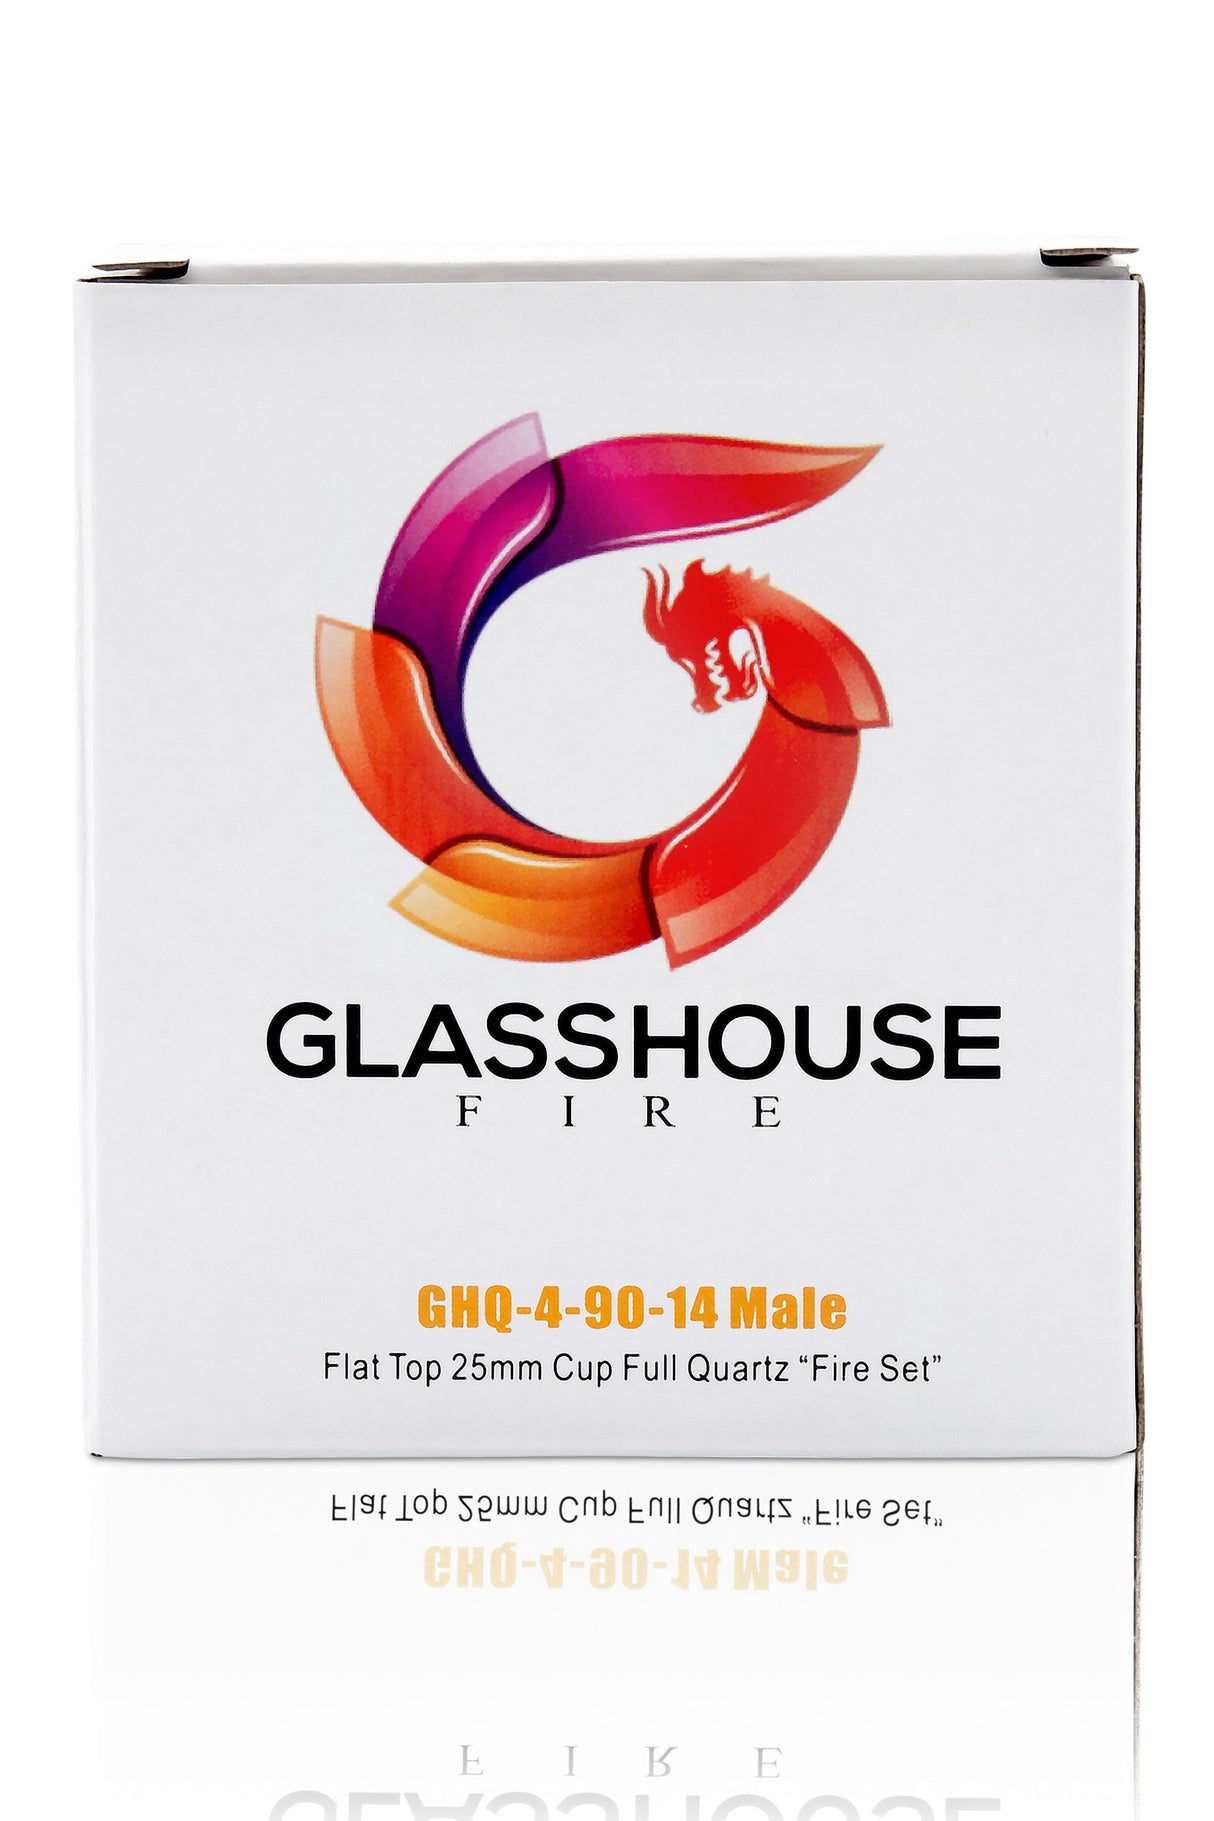 Glasshouse Full Quartz Banger Flat Top Kit "Fire Set" in packaging, front view